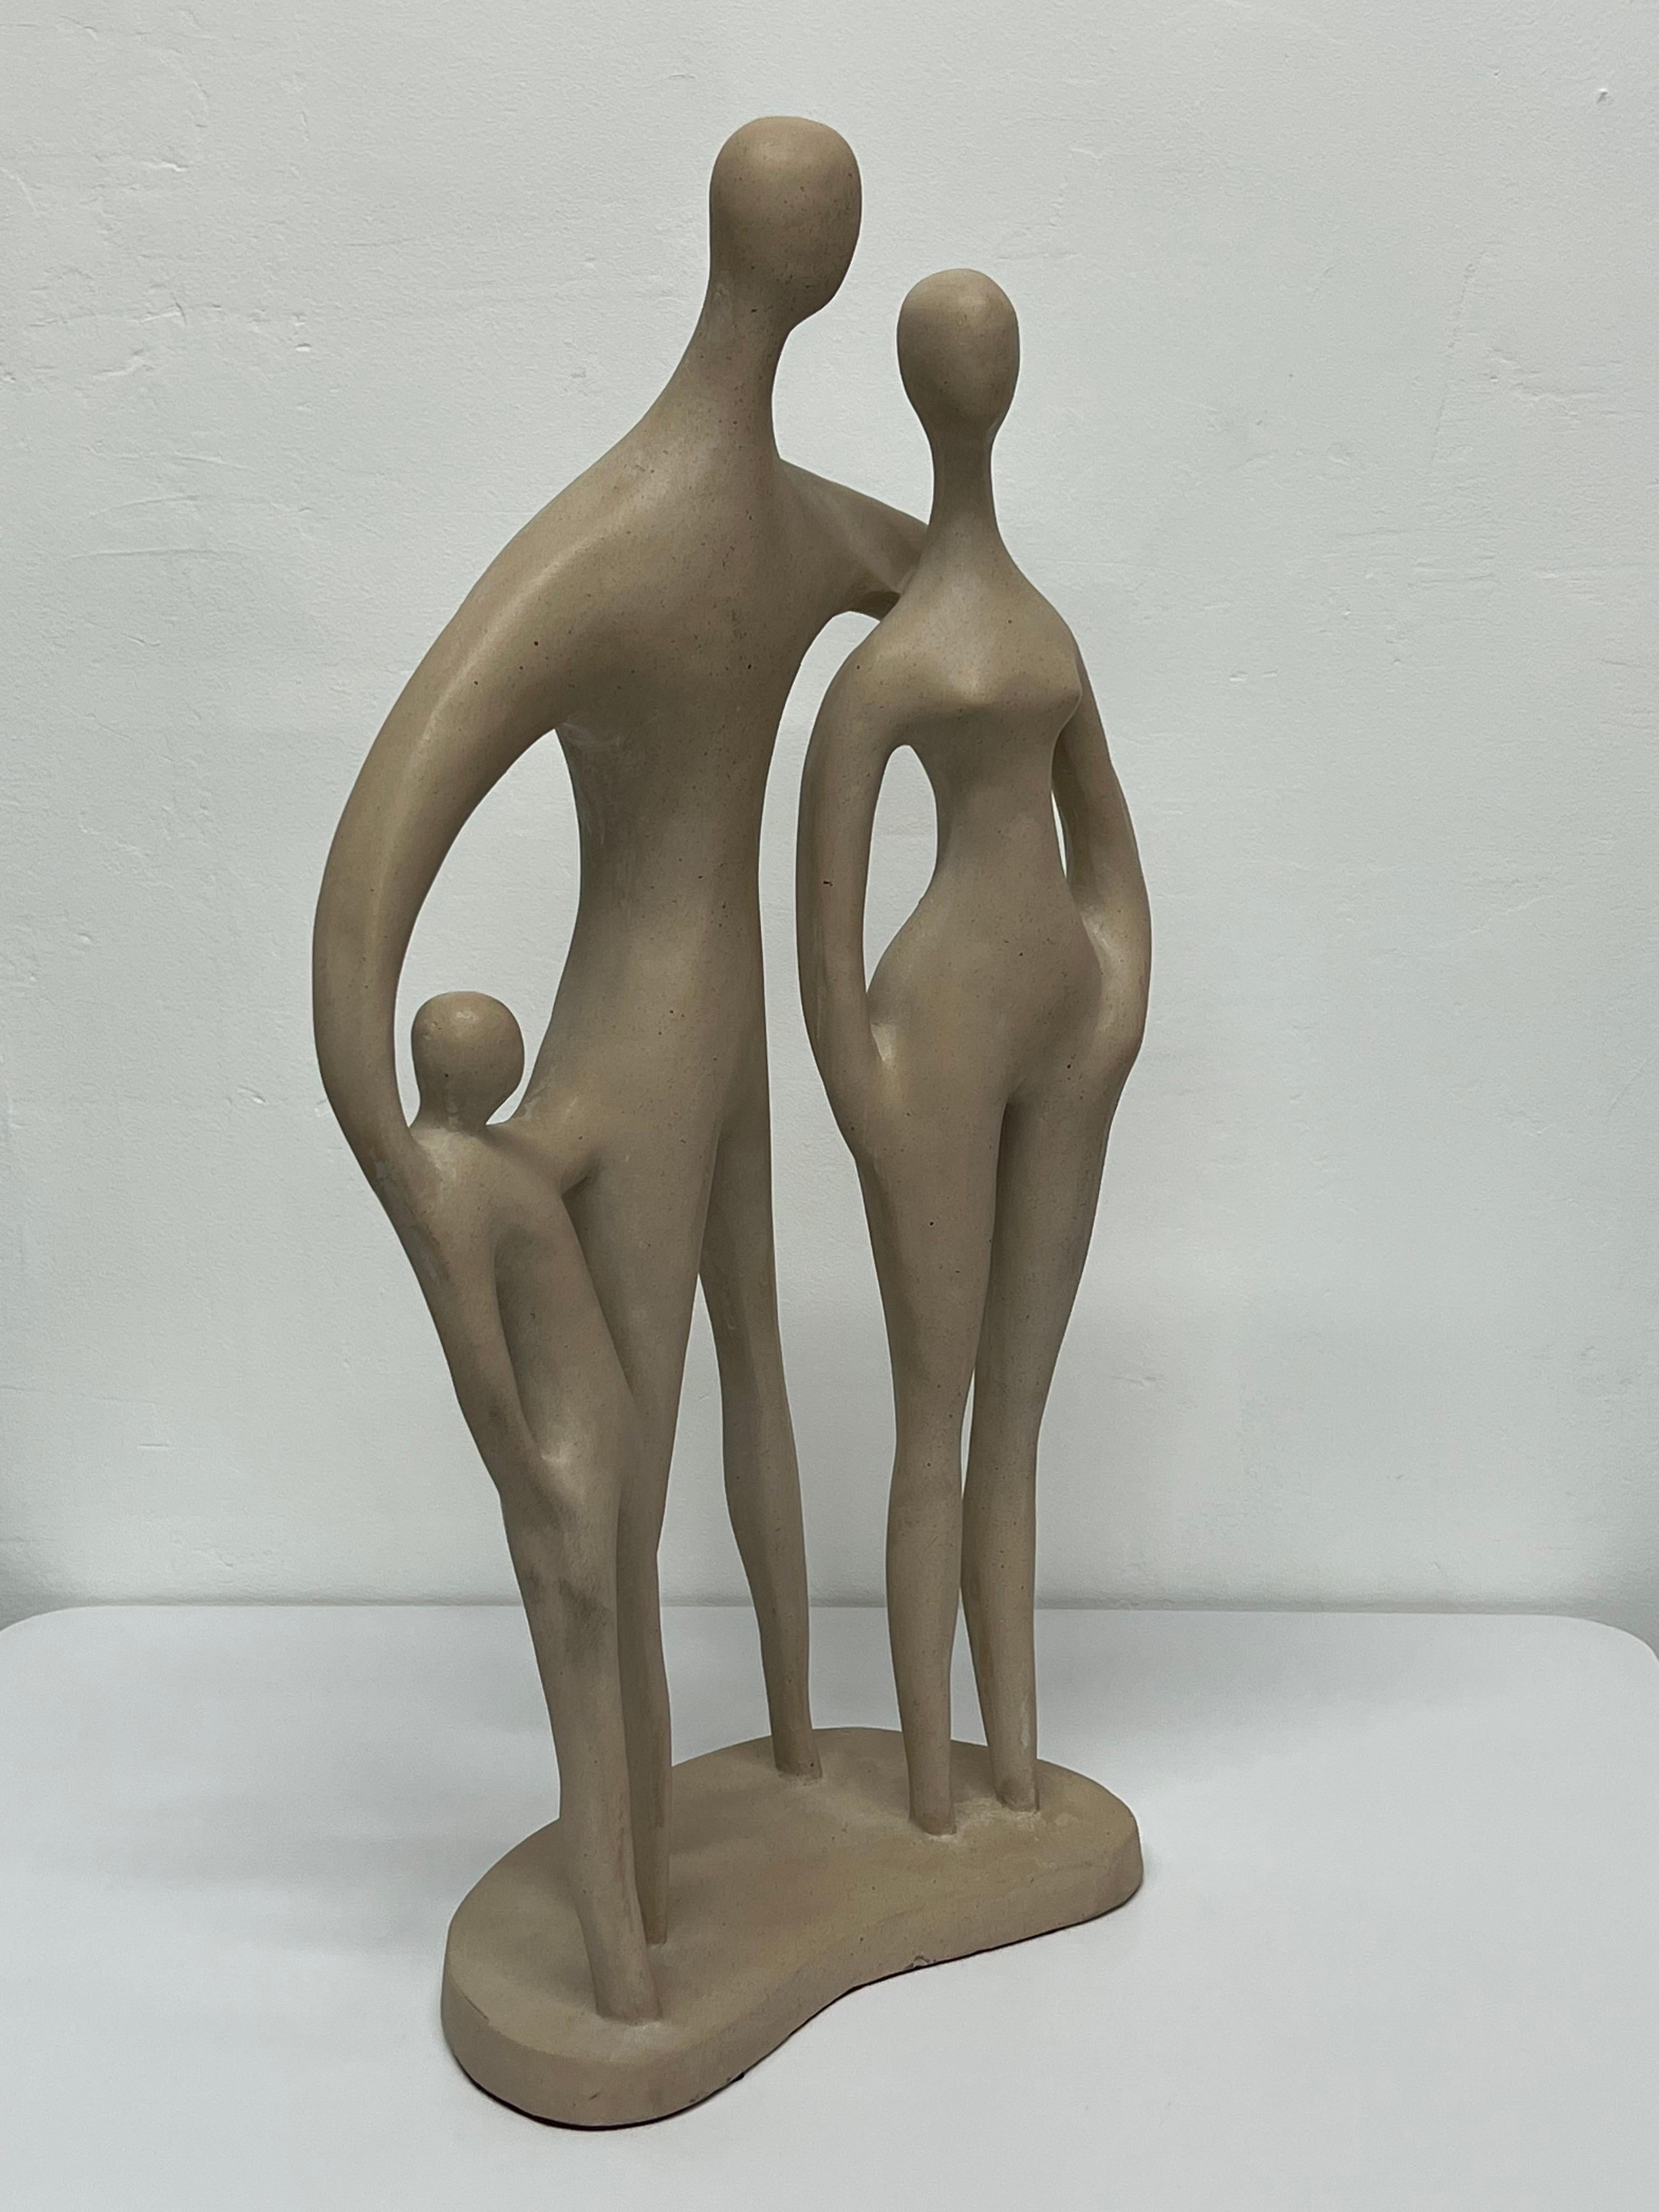 Sculpture moderniste représentant un homme, une femme et un enfant, réalisée par Austin Productions en 1979.